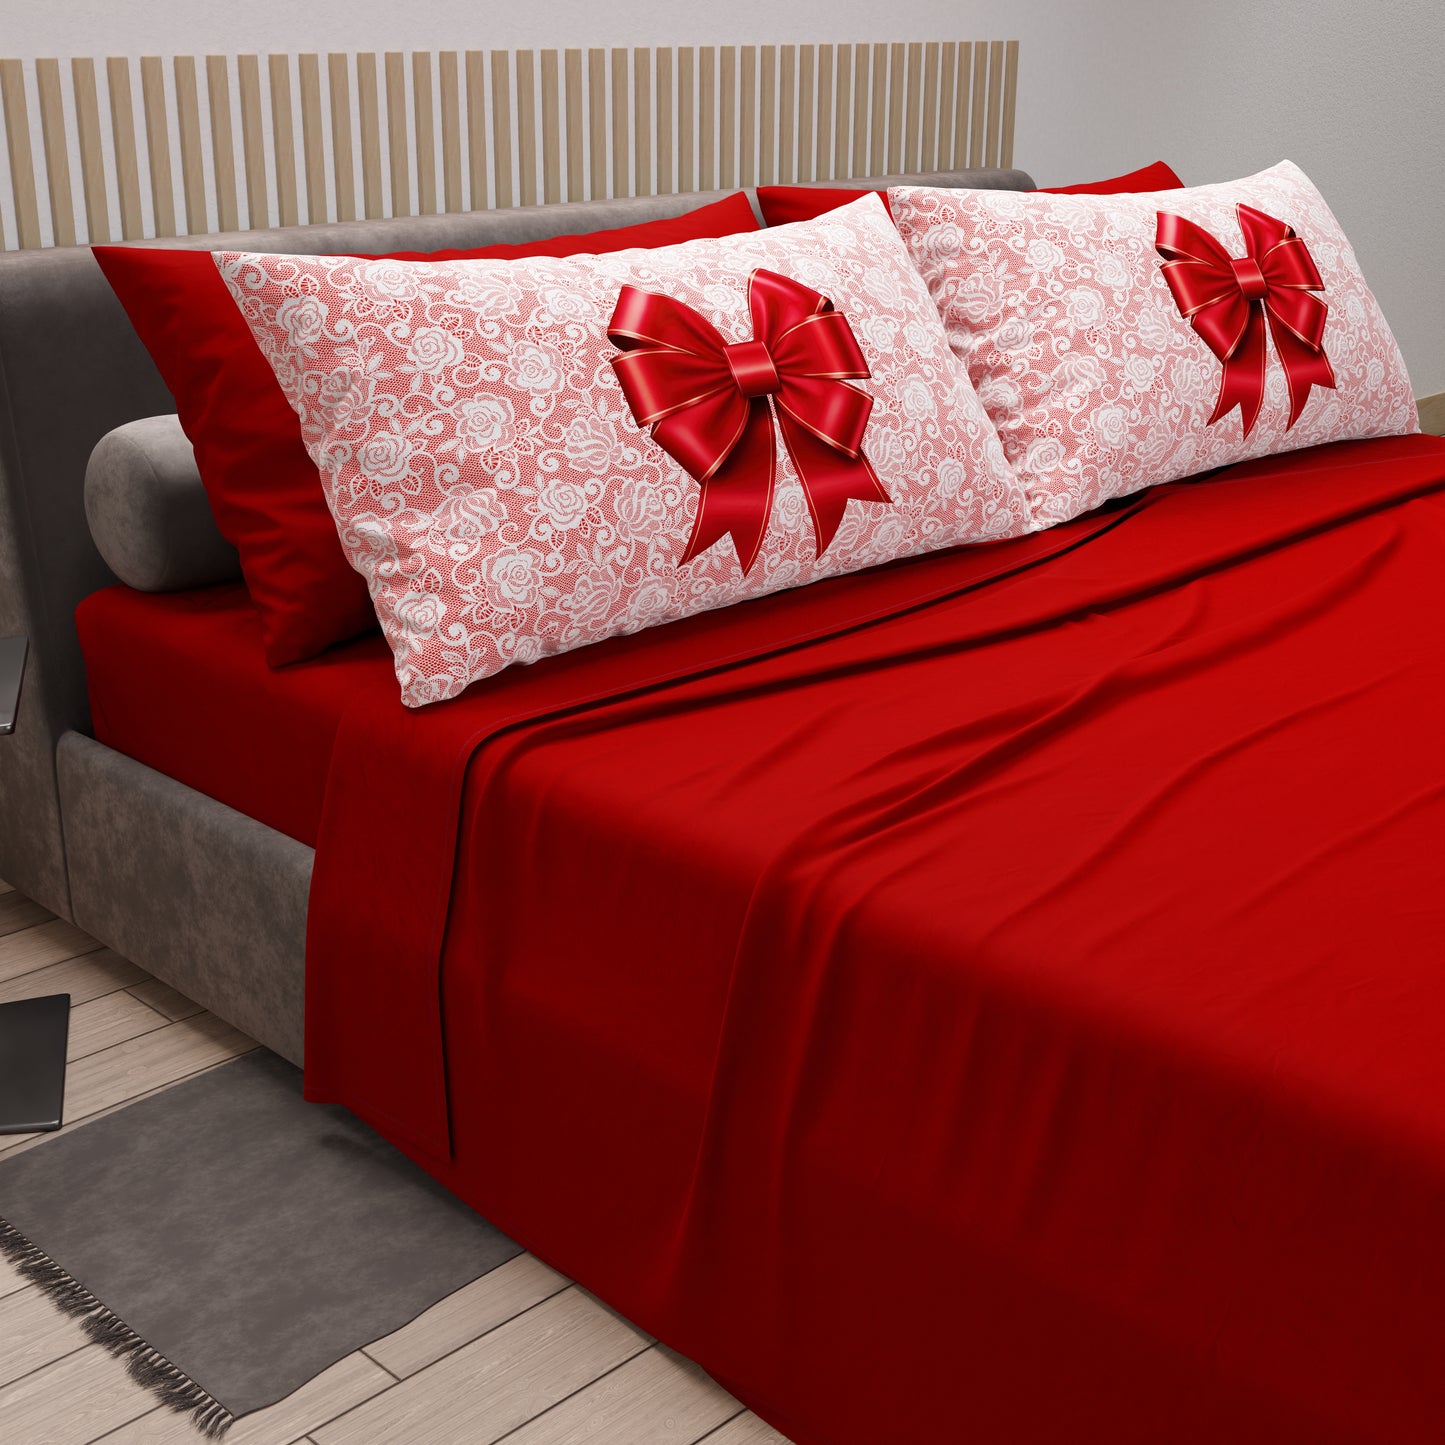 Completo lenzuola cotone RENNE fiocco lana rosso Singolo Matrimoniale